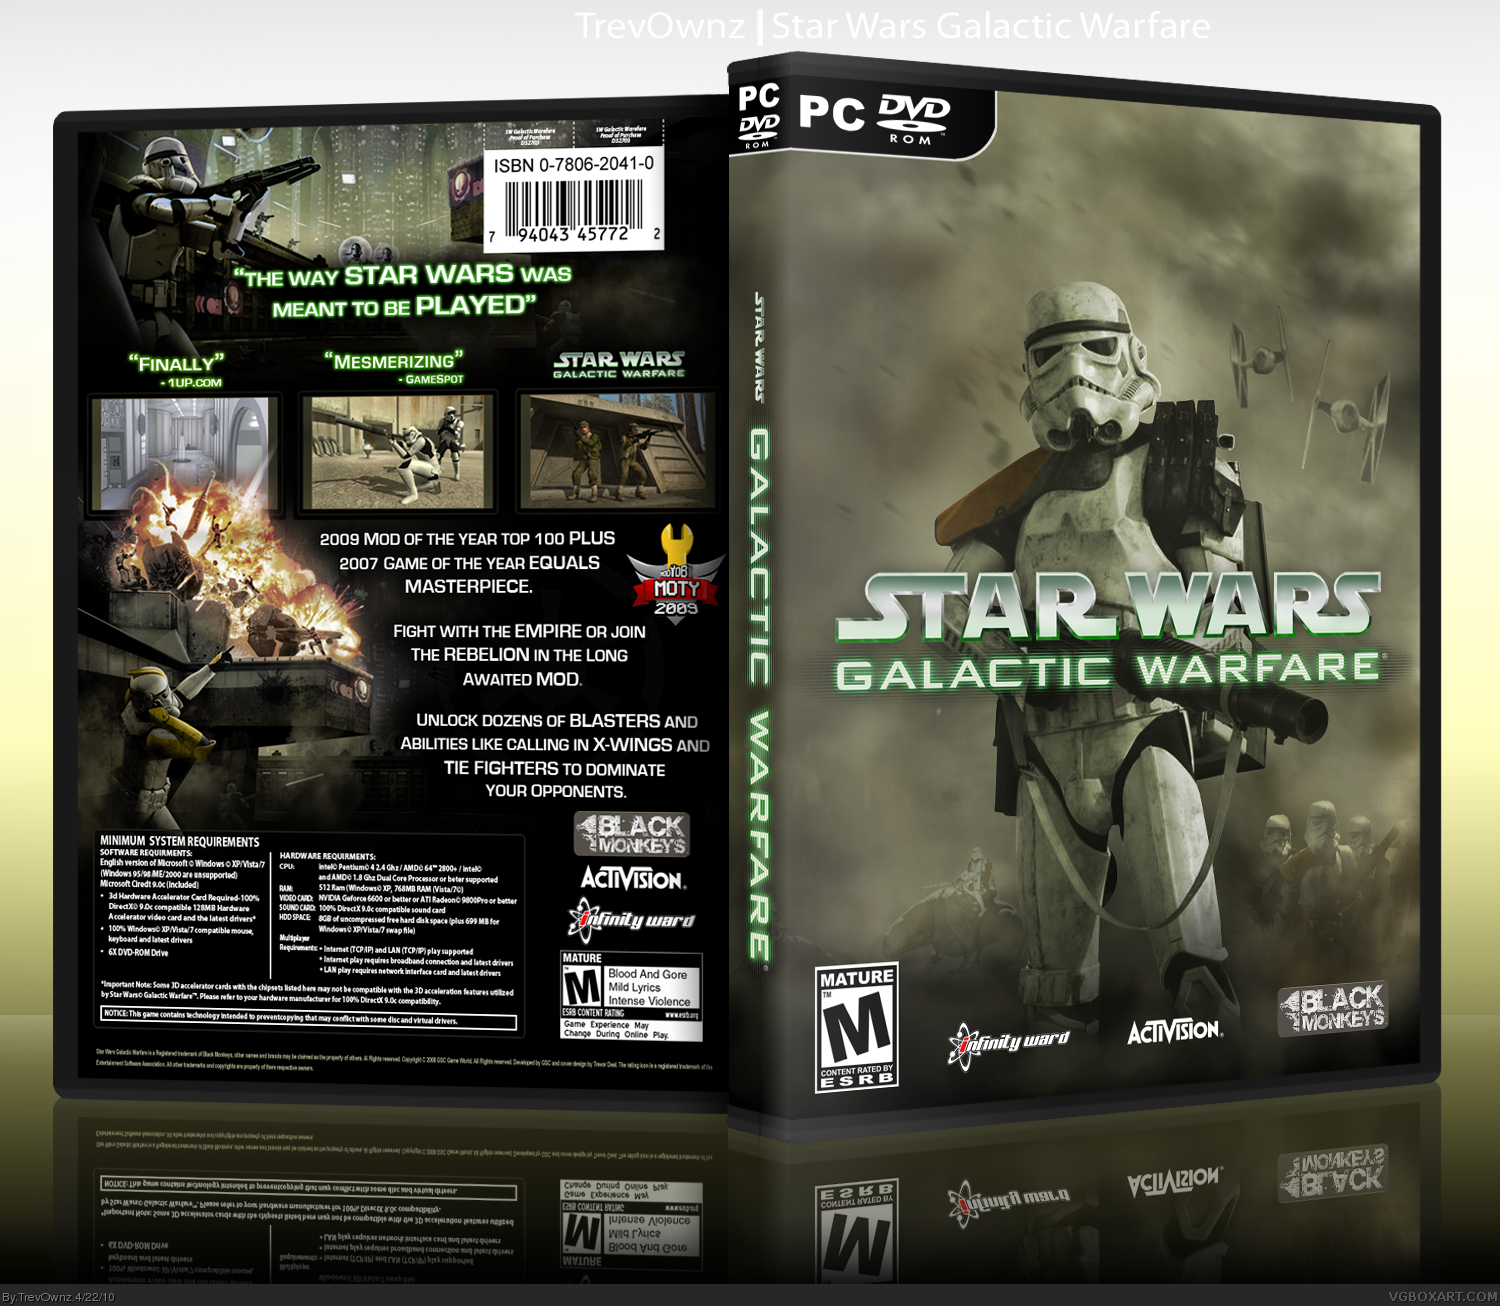 Star Wars: Galactic Warfare box cover